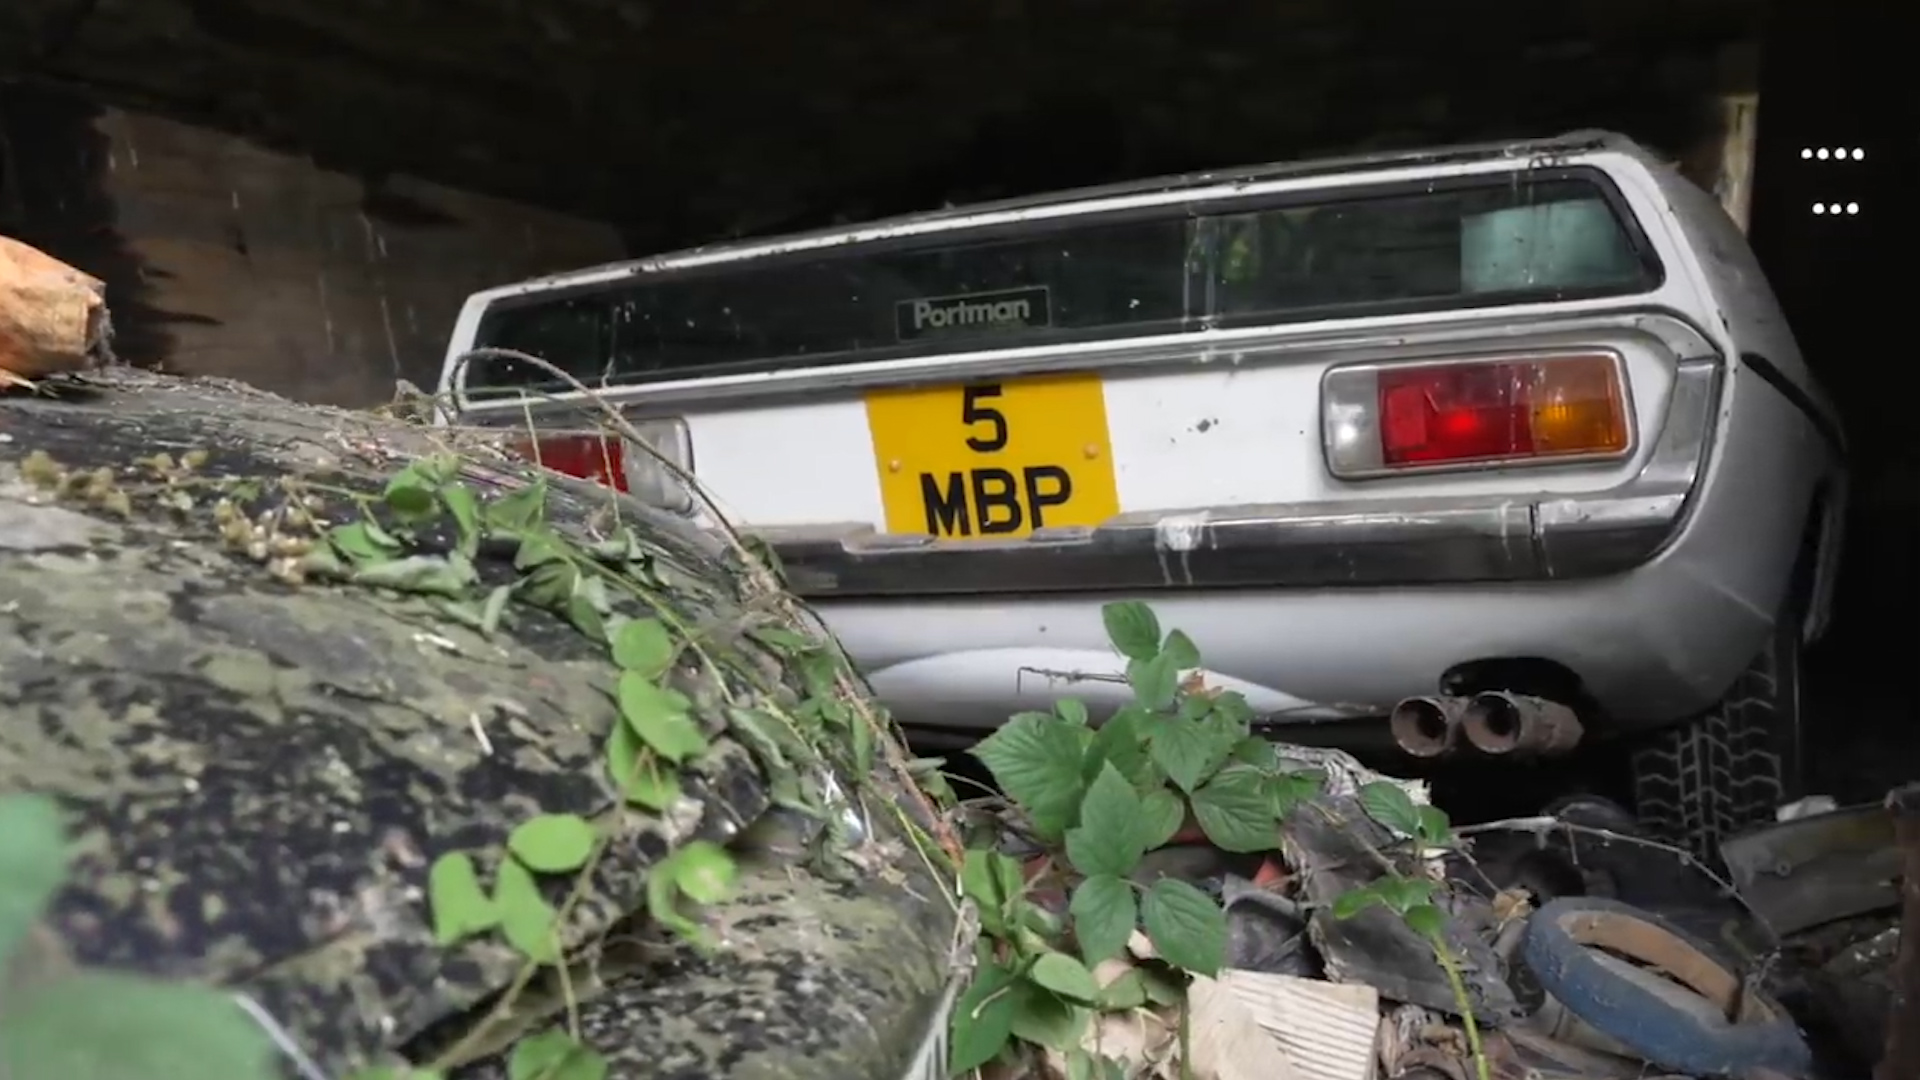 Раритетную Lamborghini Espada обнаружили в сельском городке Великобритании